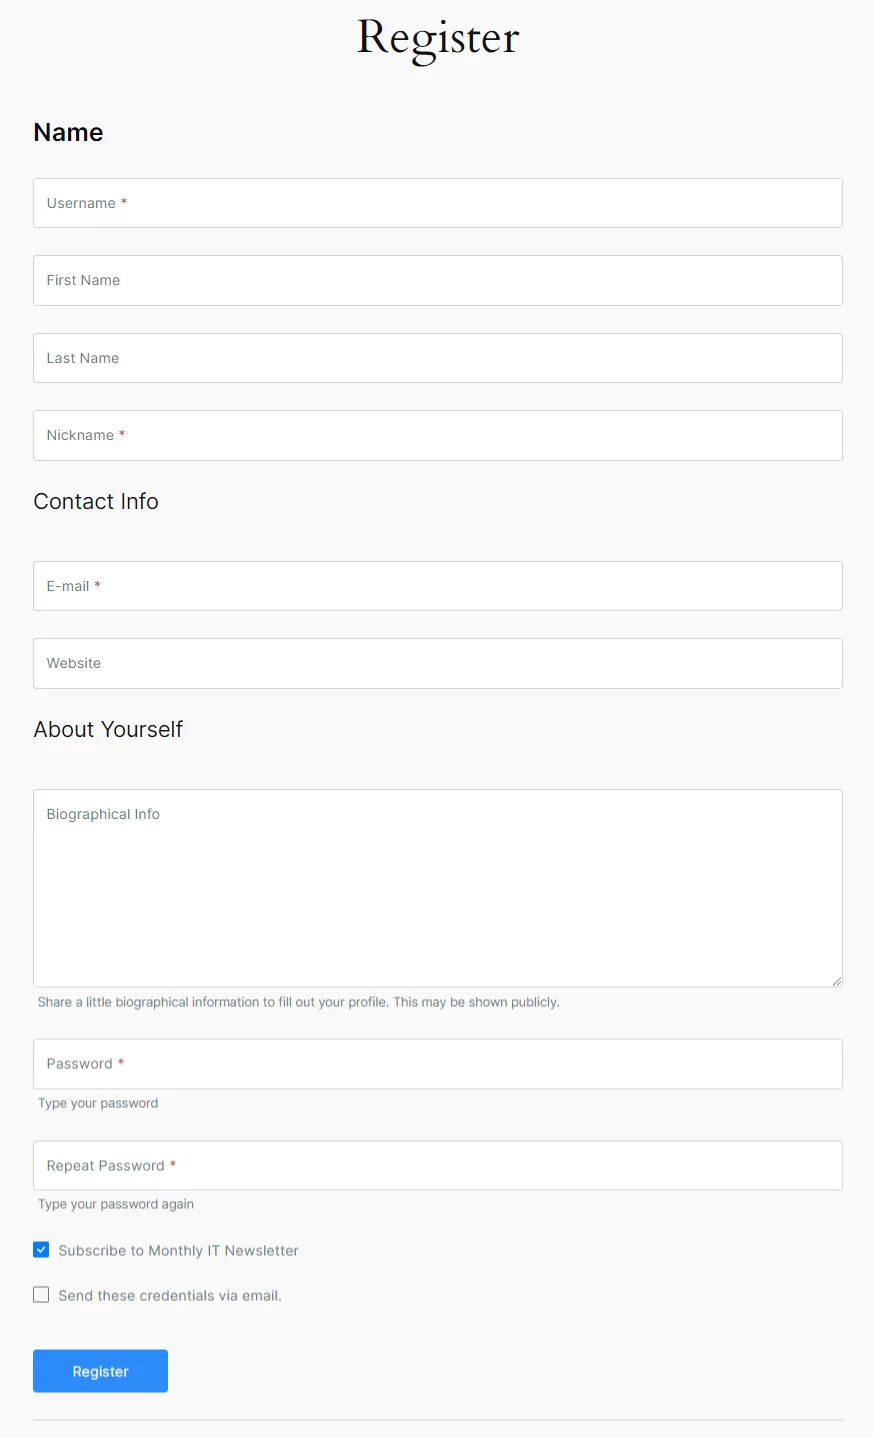 Profile Builder Pro - MailPoet - Registration Form